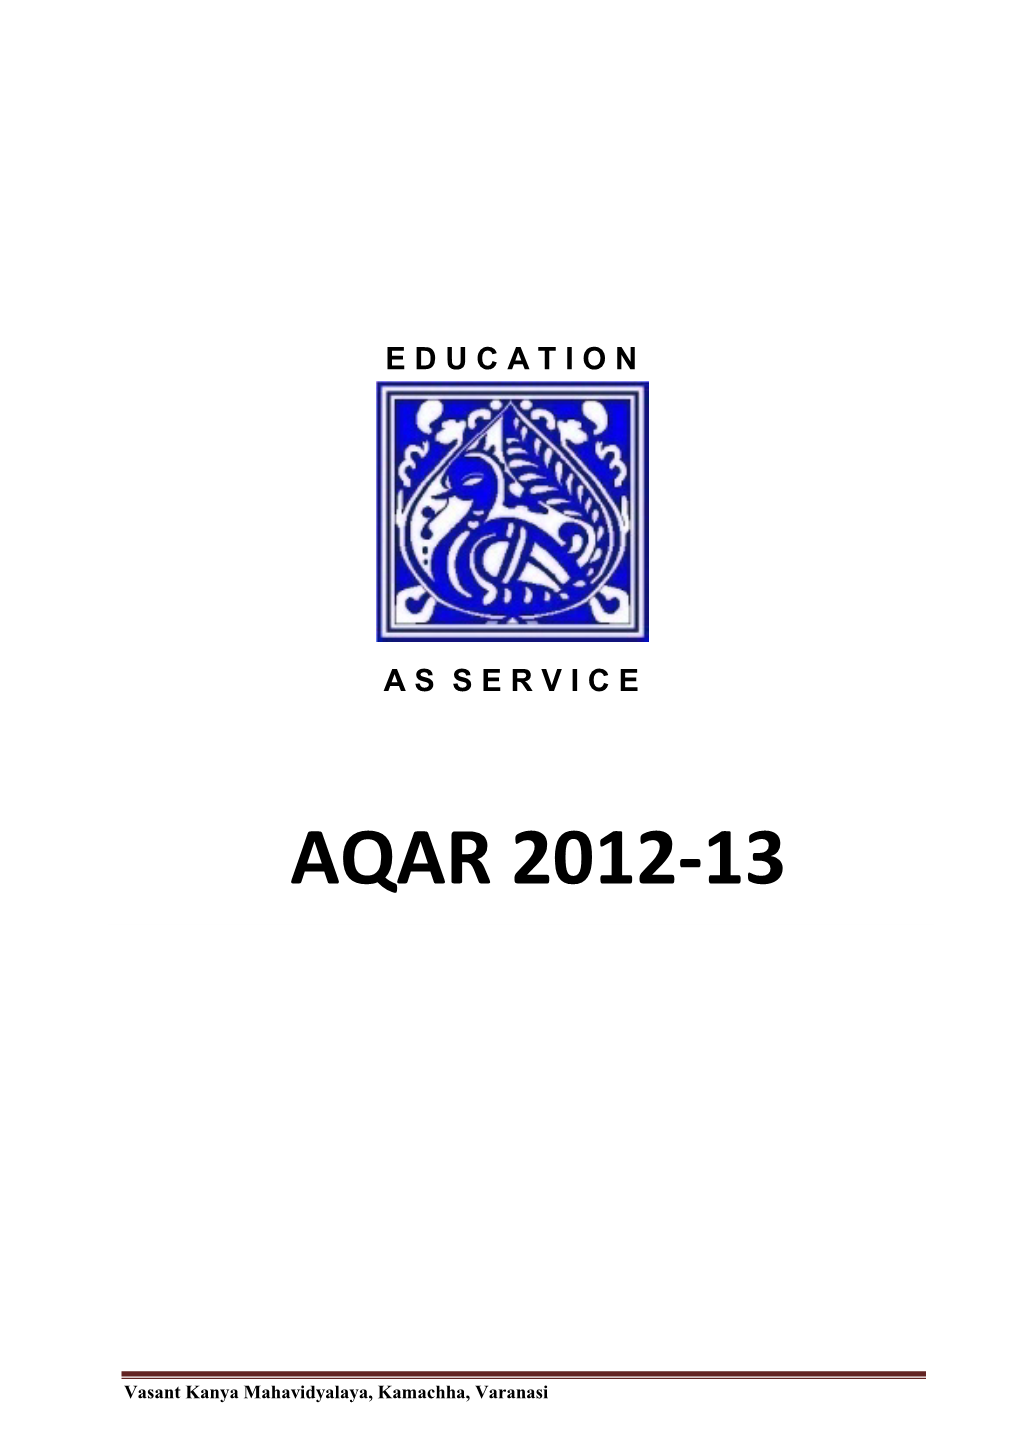 Aqar 2012-13